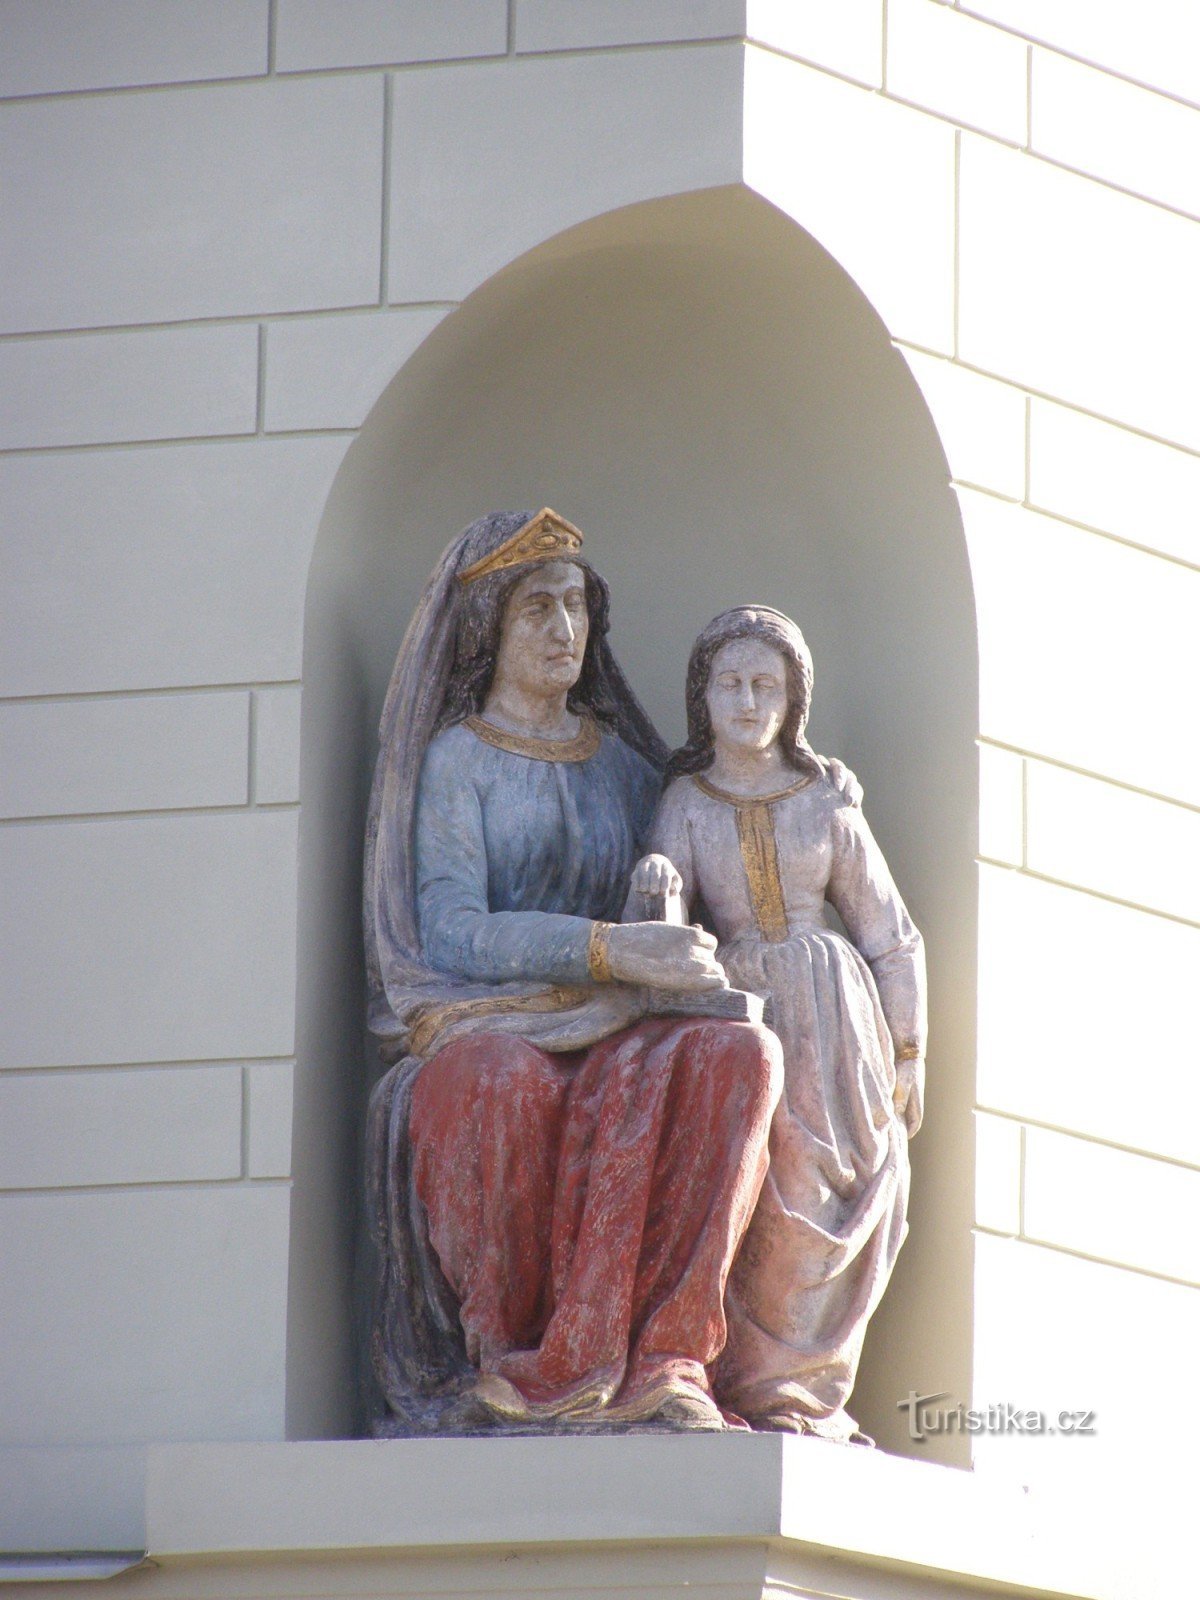 Тинець над Лабом - міщанський будинок № 158 зі статуєю св. Анна навчає Діву Марію